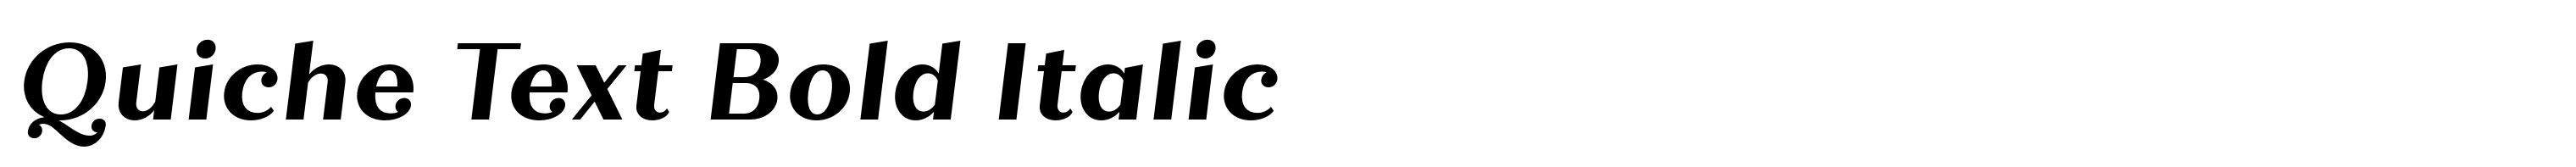 Quiche Text Bold Italic